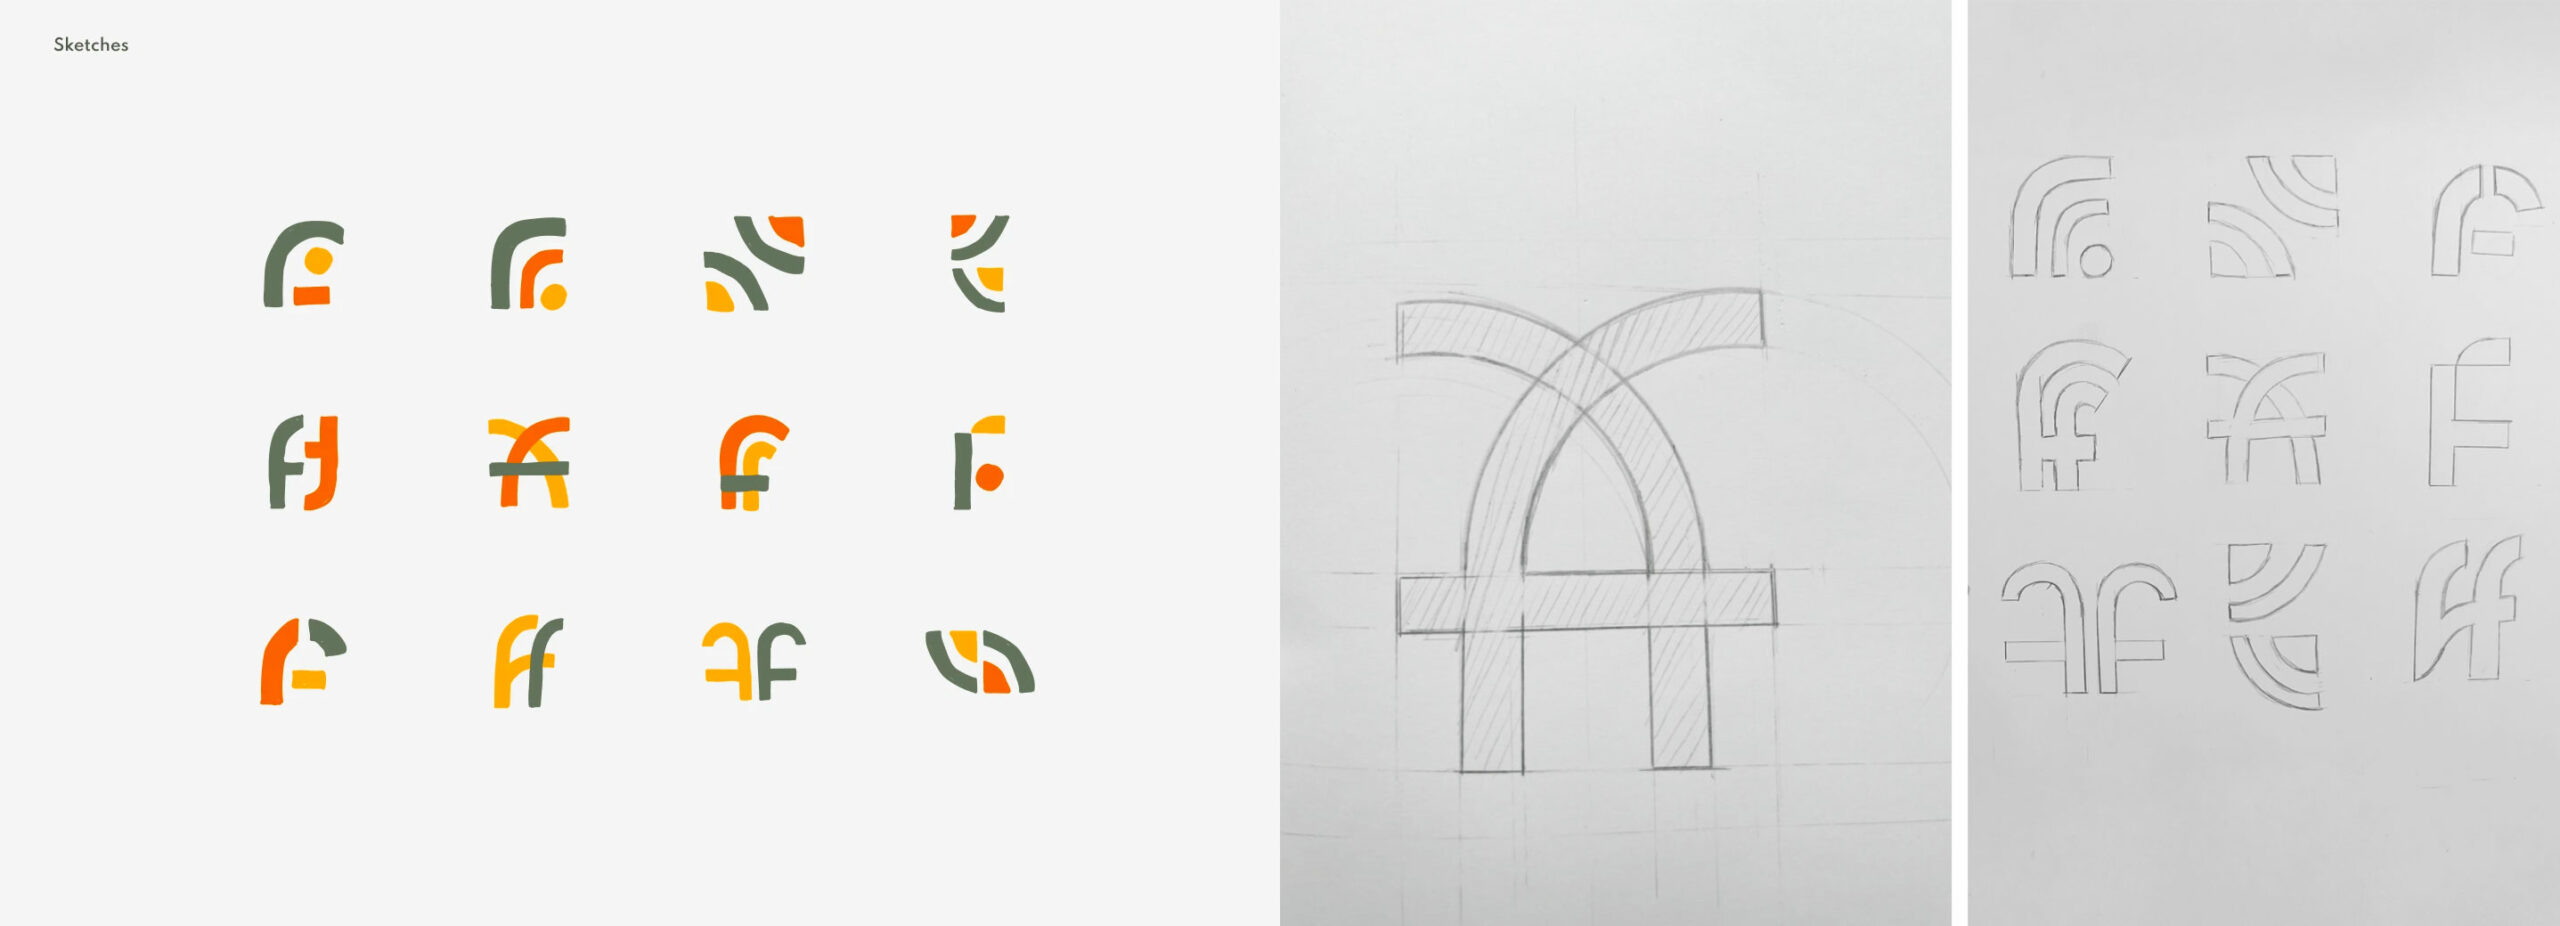 FF-logo-sketches